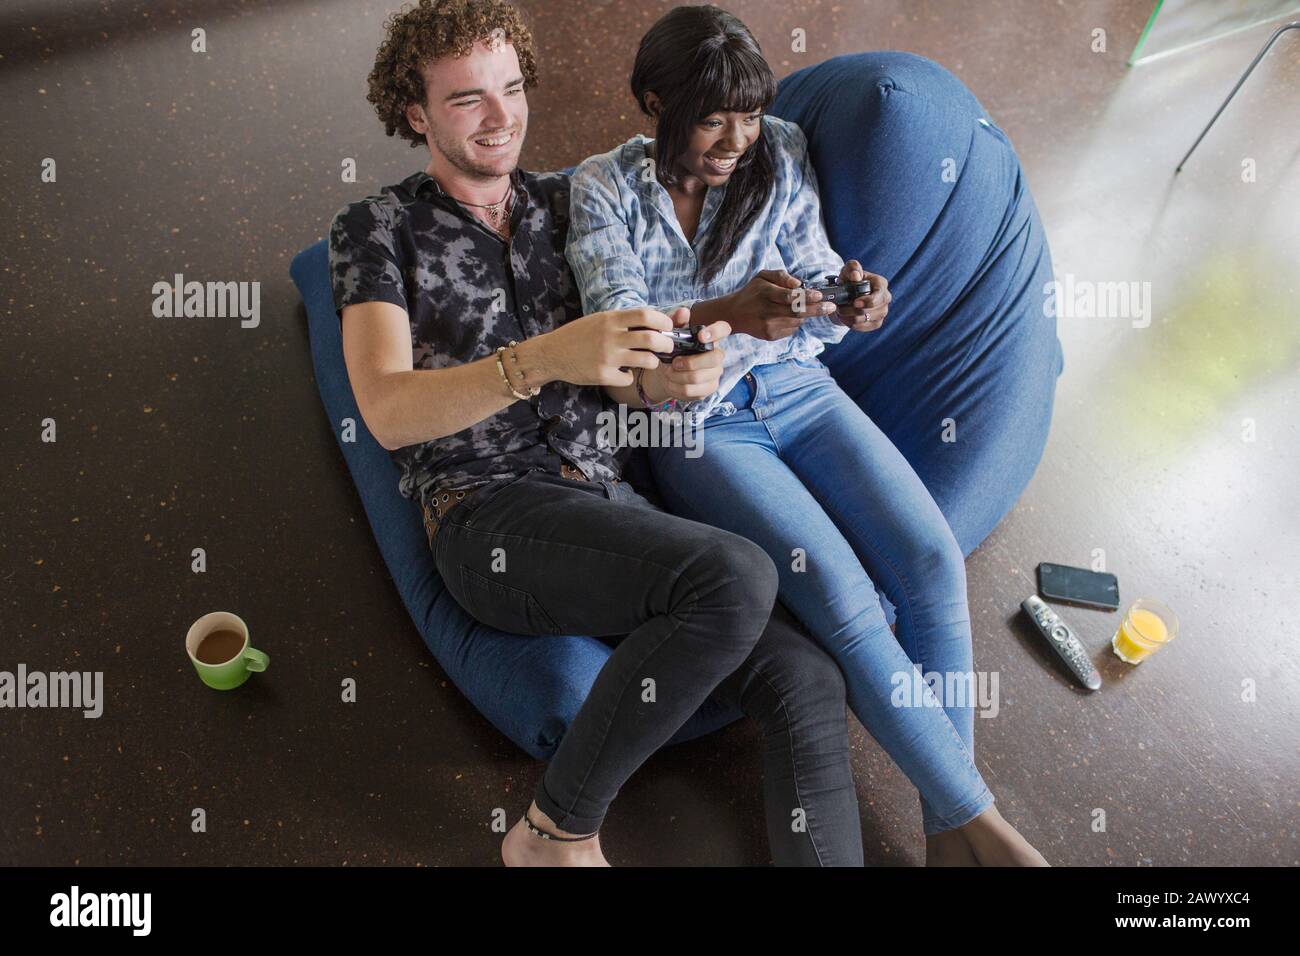 Glückliches junges Paar spielt Videospiel auf dem Beantags Stuhl Stockfoto